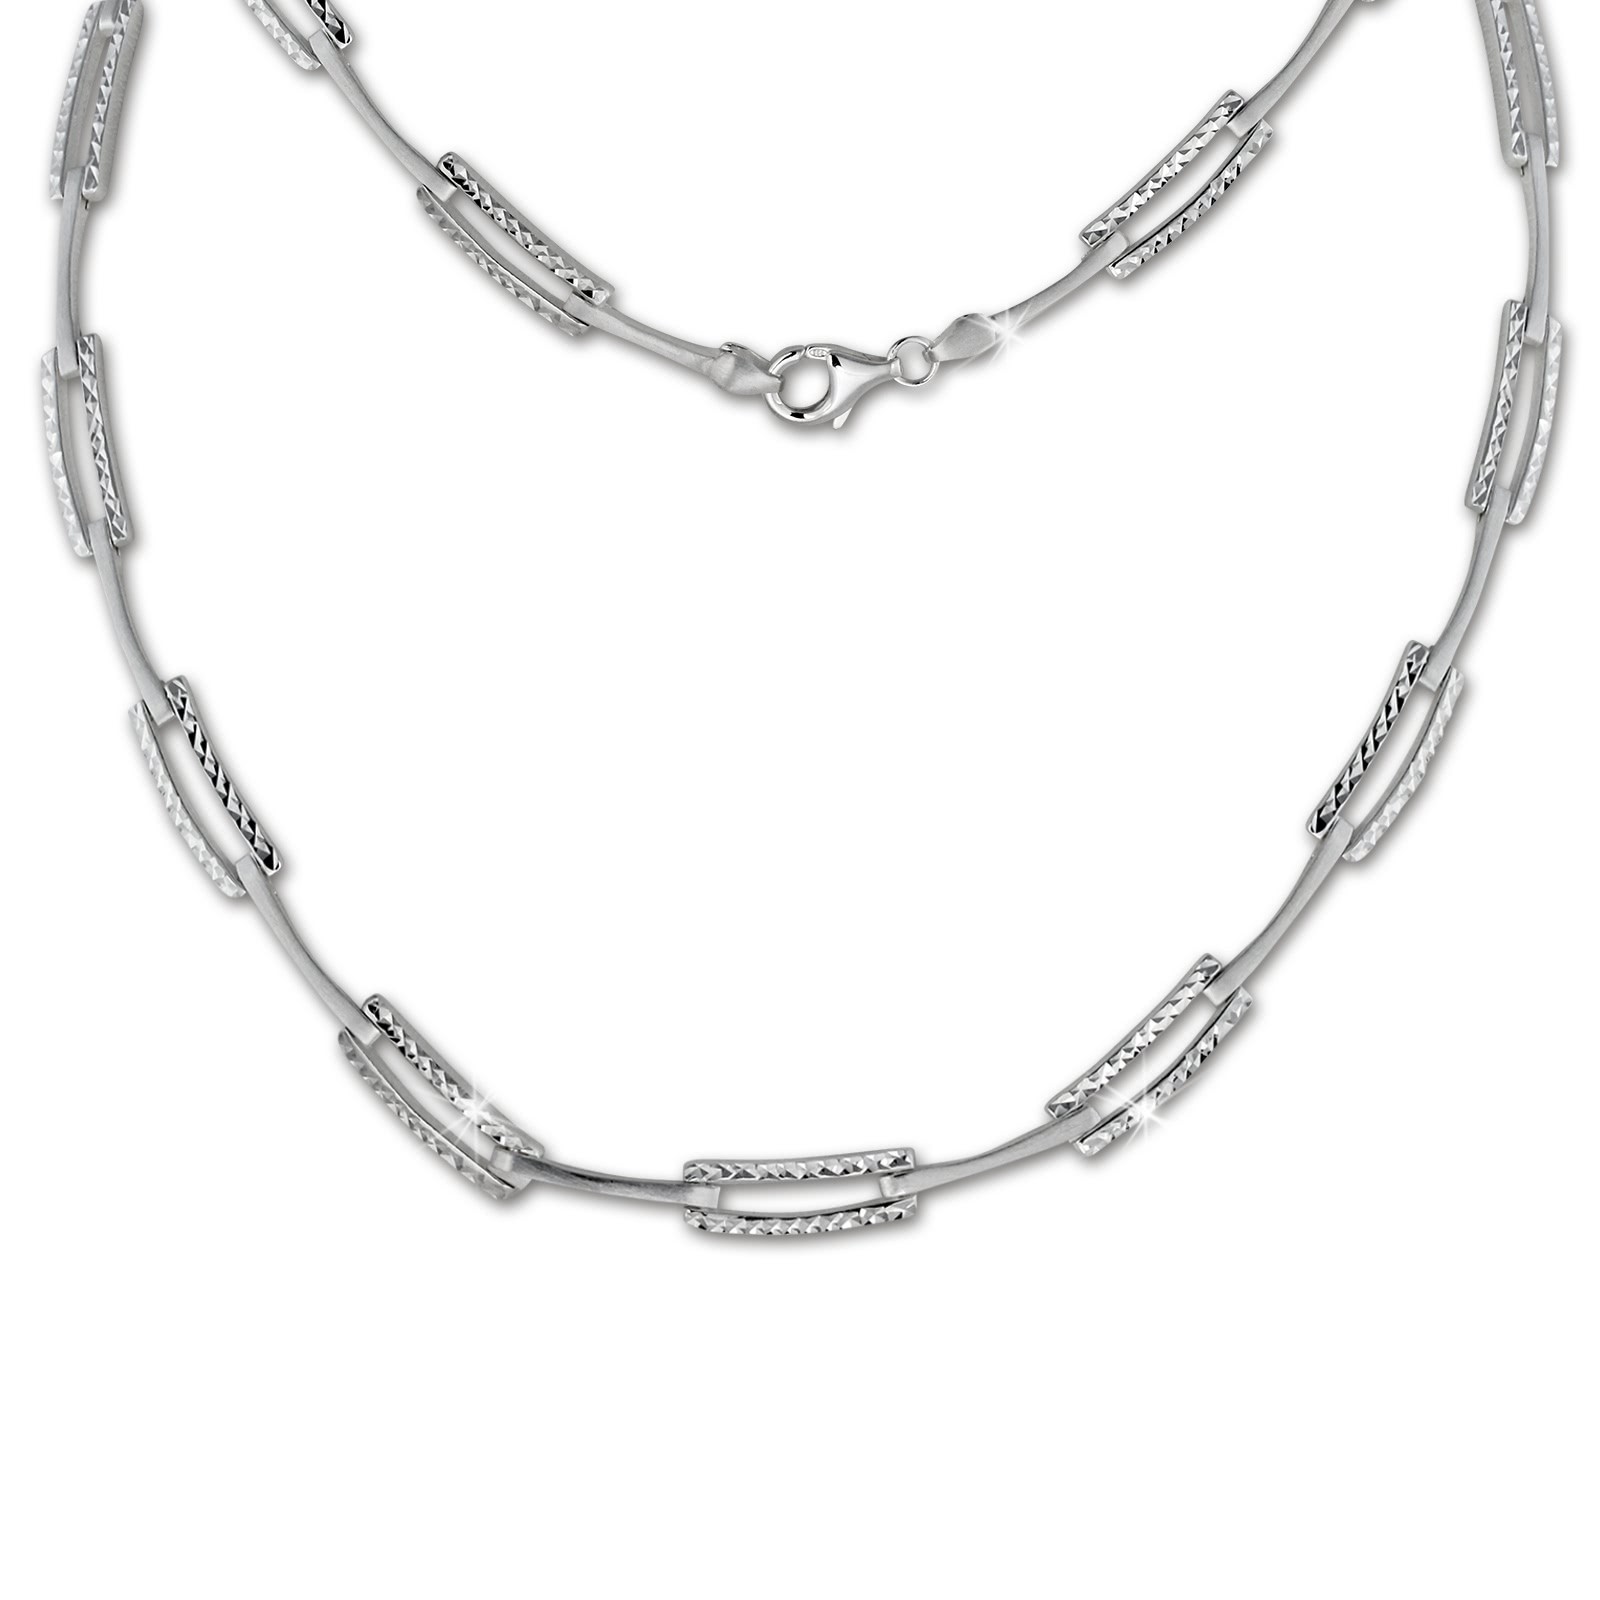 SilberDream Collier Kette diamantiert 925 Silber 44cm Halskette SDK442J